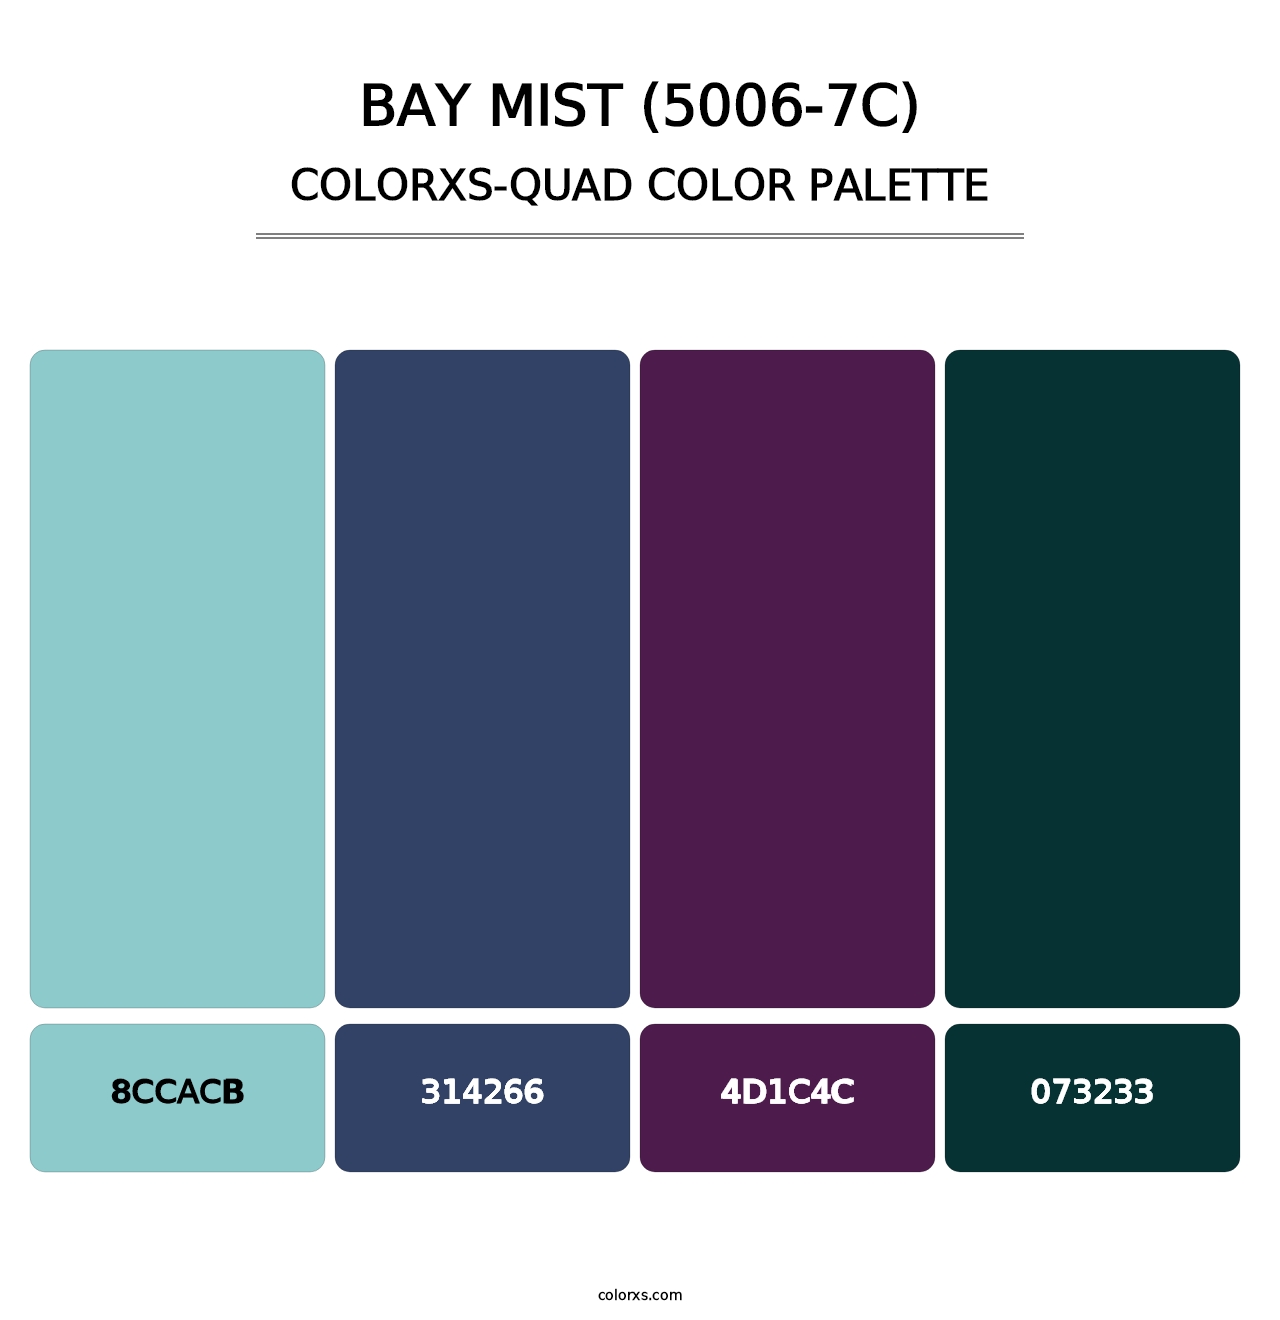 Bay Mist (5006-7C) - Colorxs Quad Palette